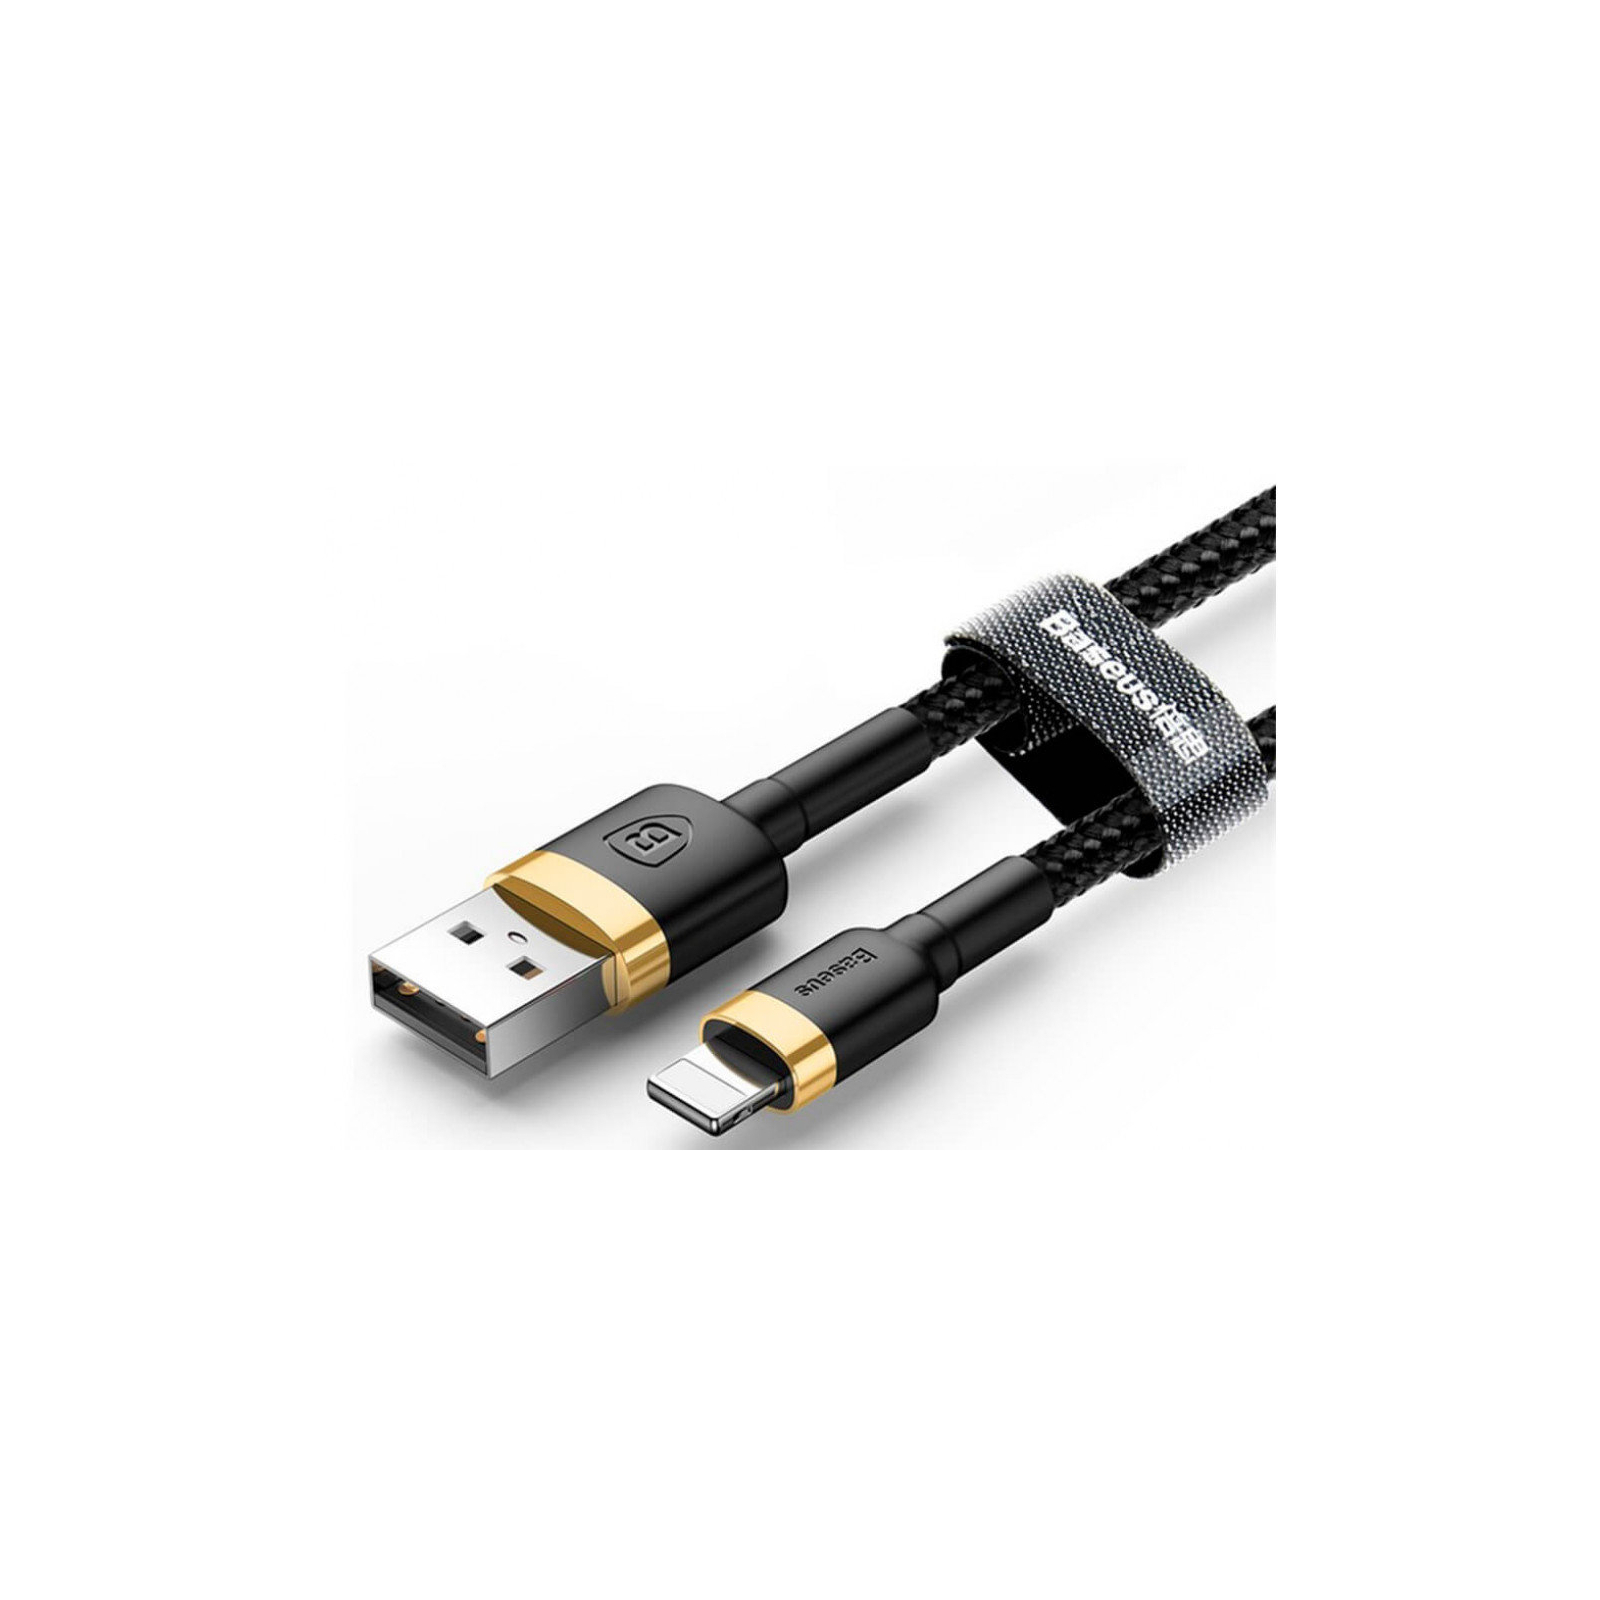 Дата кабель USB 2.0 AM to Lightning 0.5m Cafule 2.4A gold+black Baseus (CALKLF-AV1) изображение 2